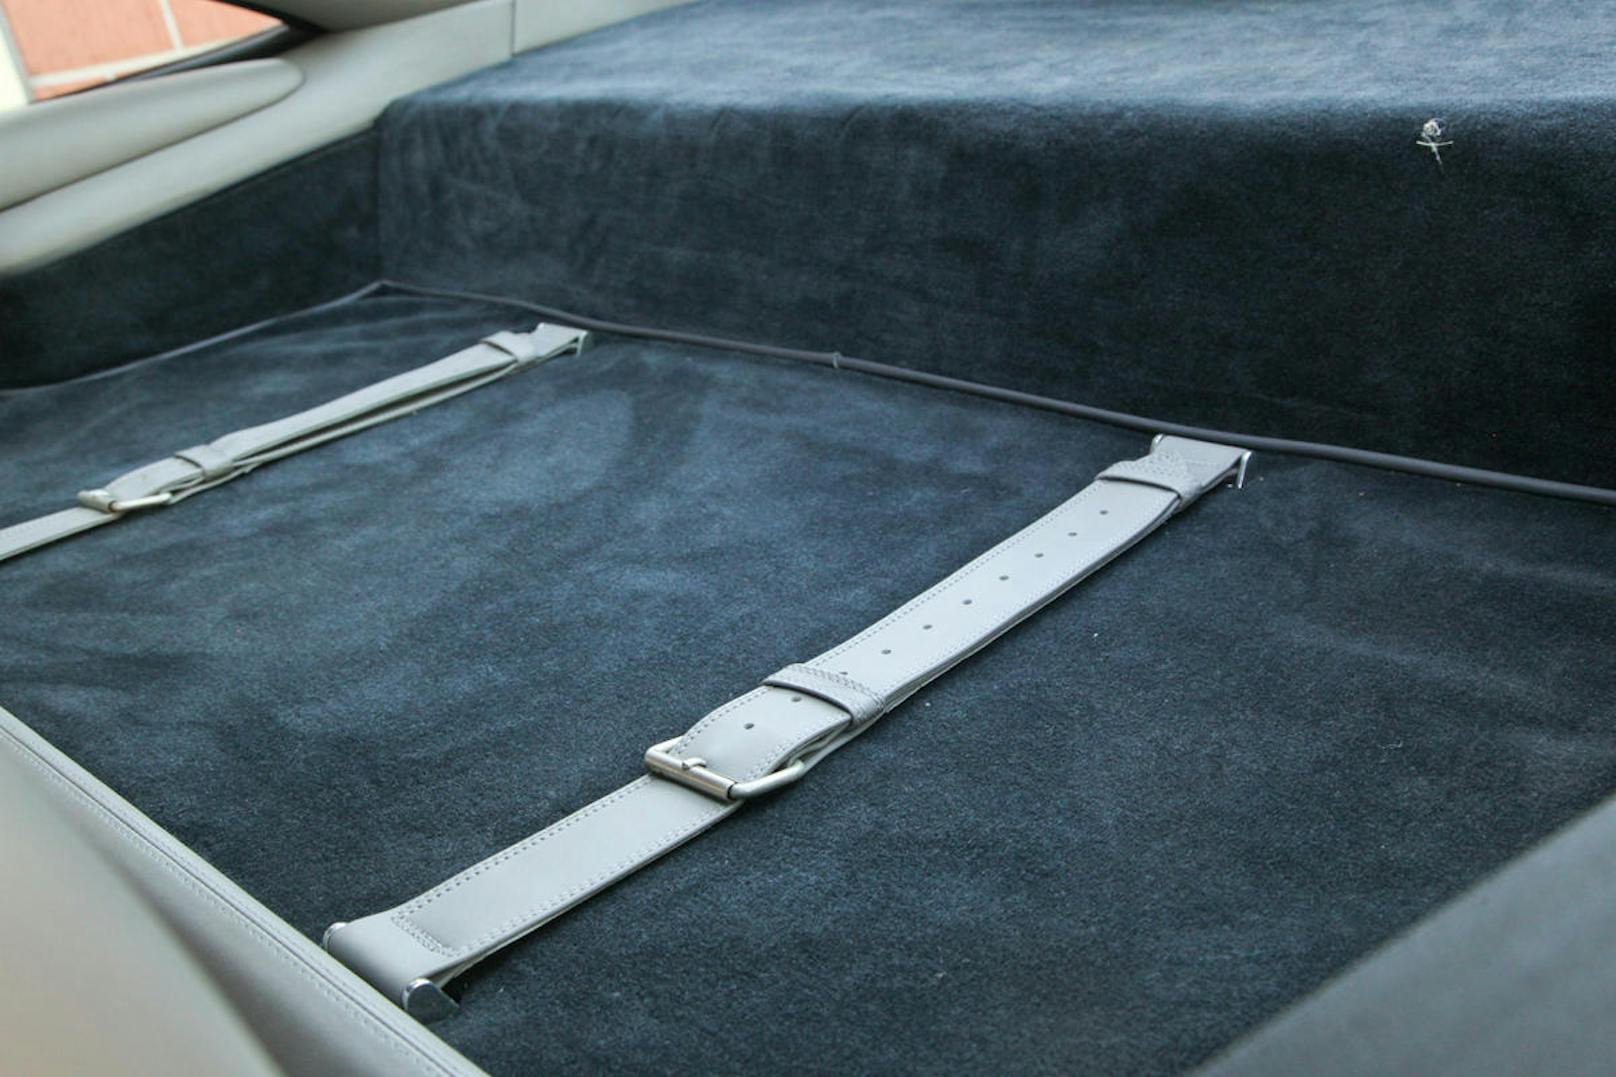 Wem die 185 Liter Fassungsvolumen im Kofferraum nicht reichten, konnte auch hinter den Sitzen noch etwas Gepäck verstauen und anzurren.